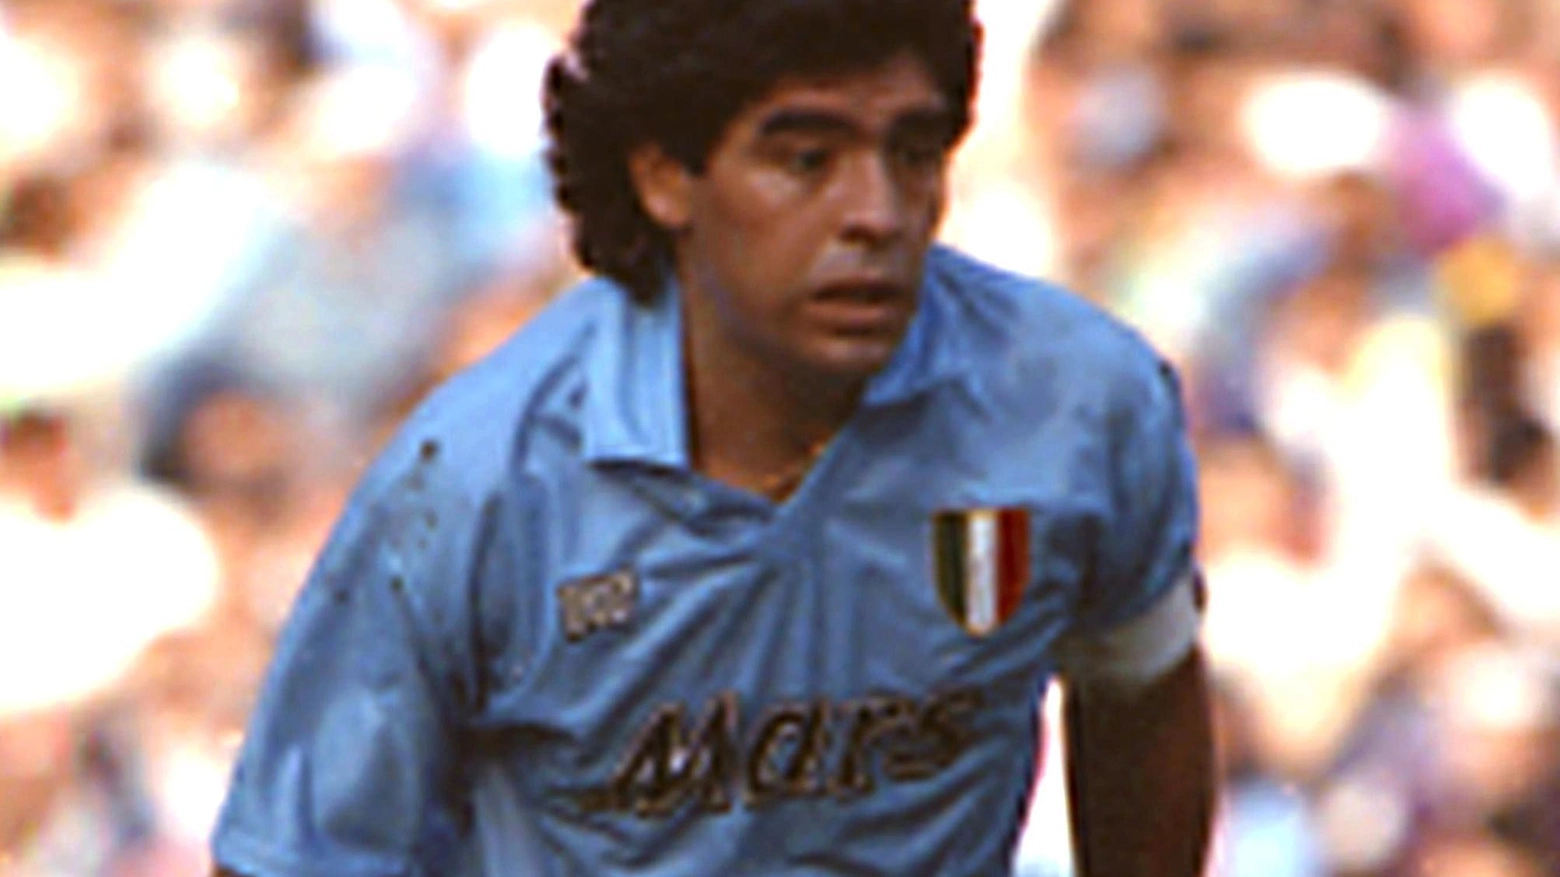 Maradona con la maglia del Napoli